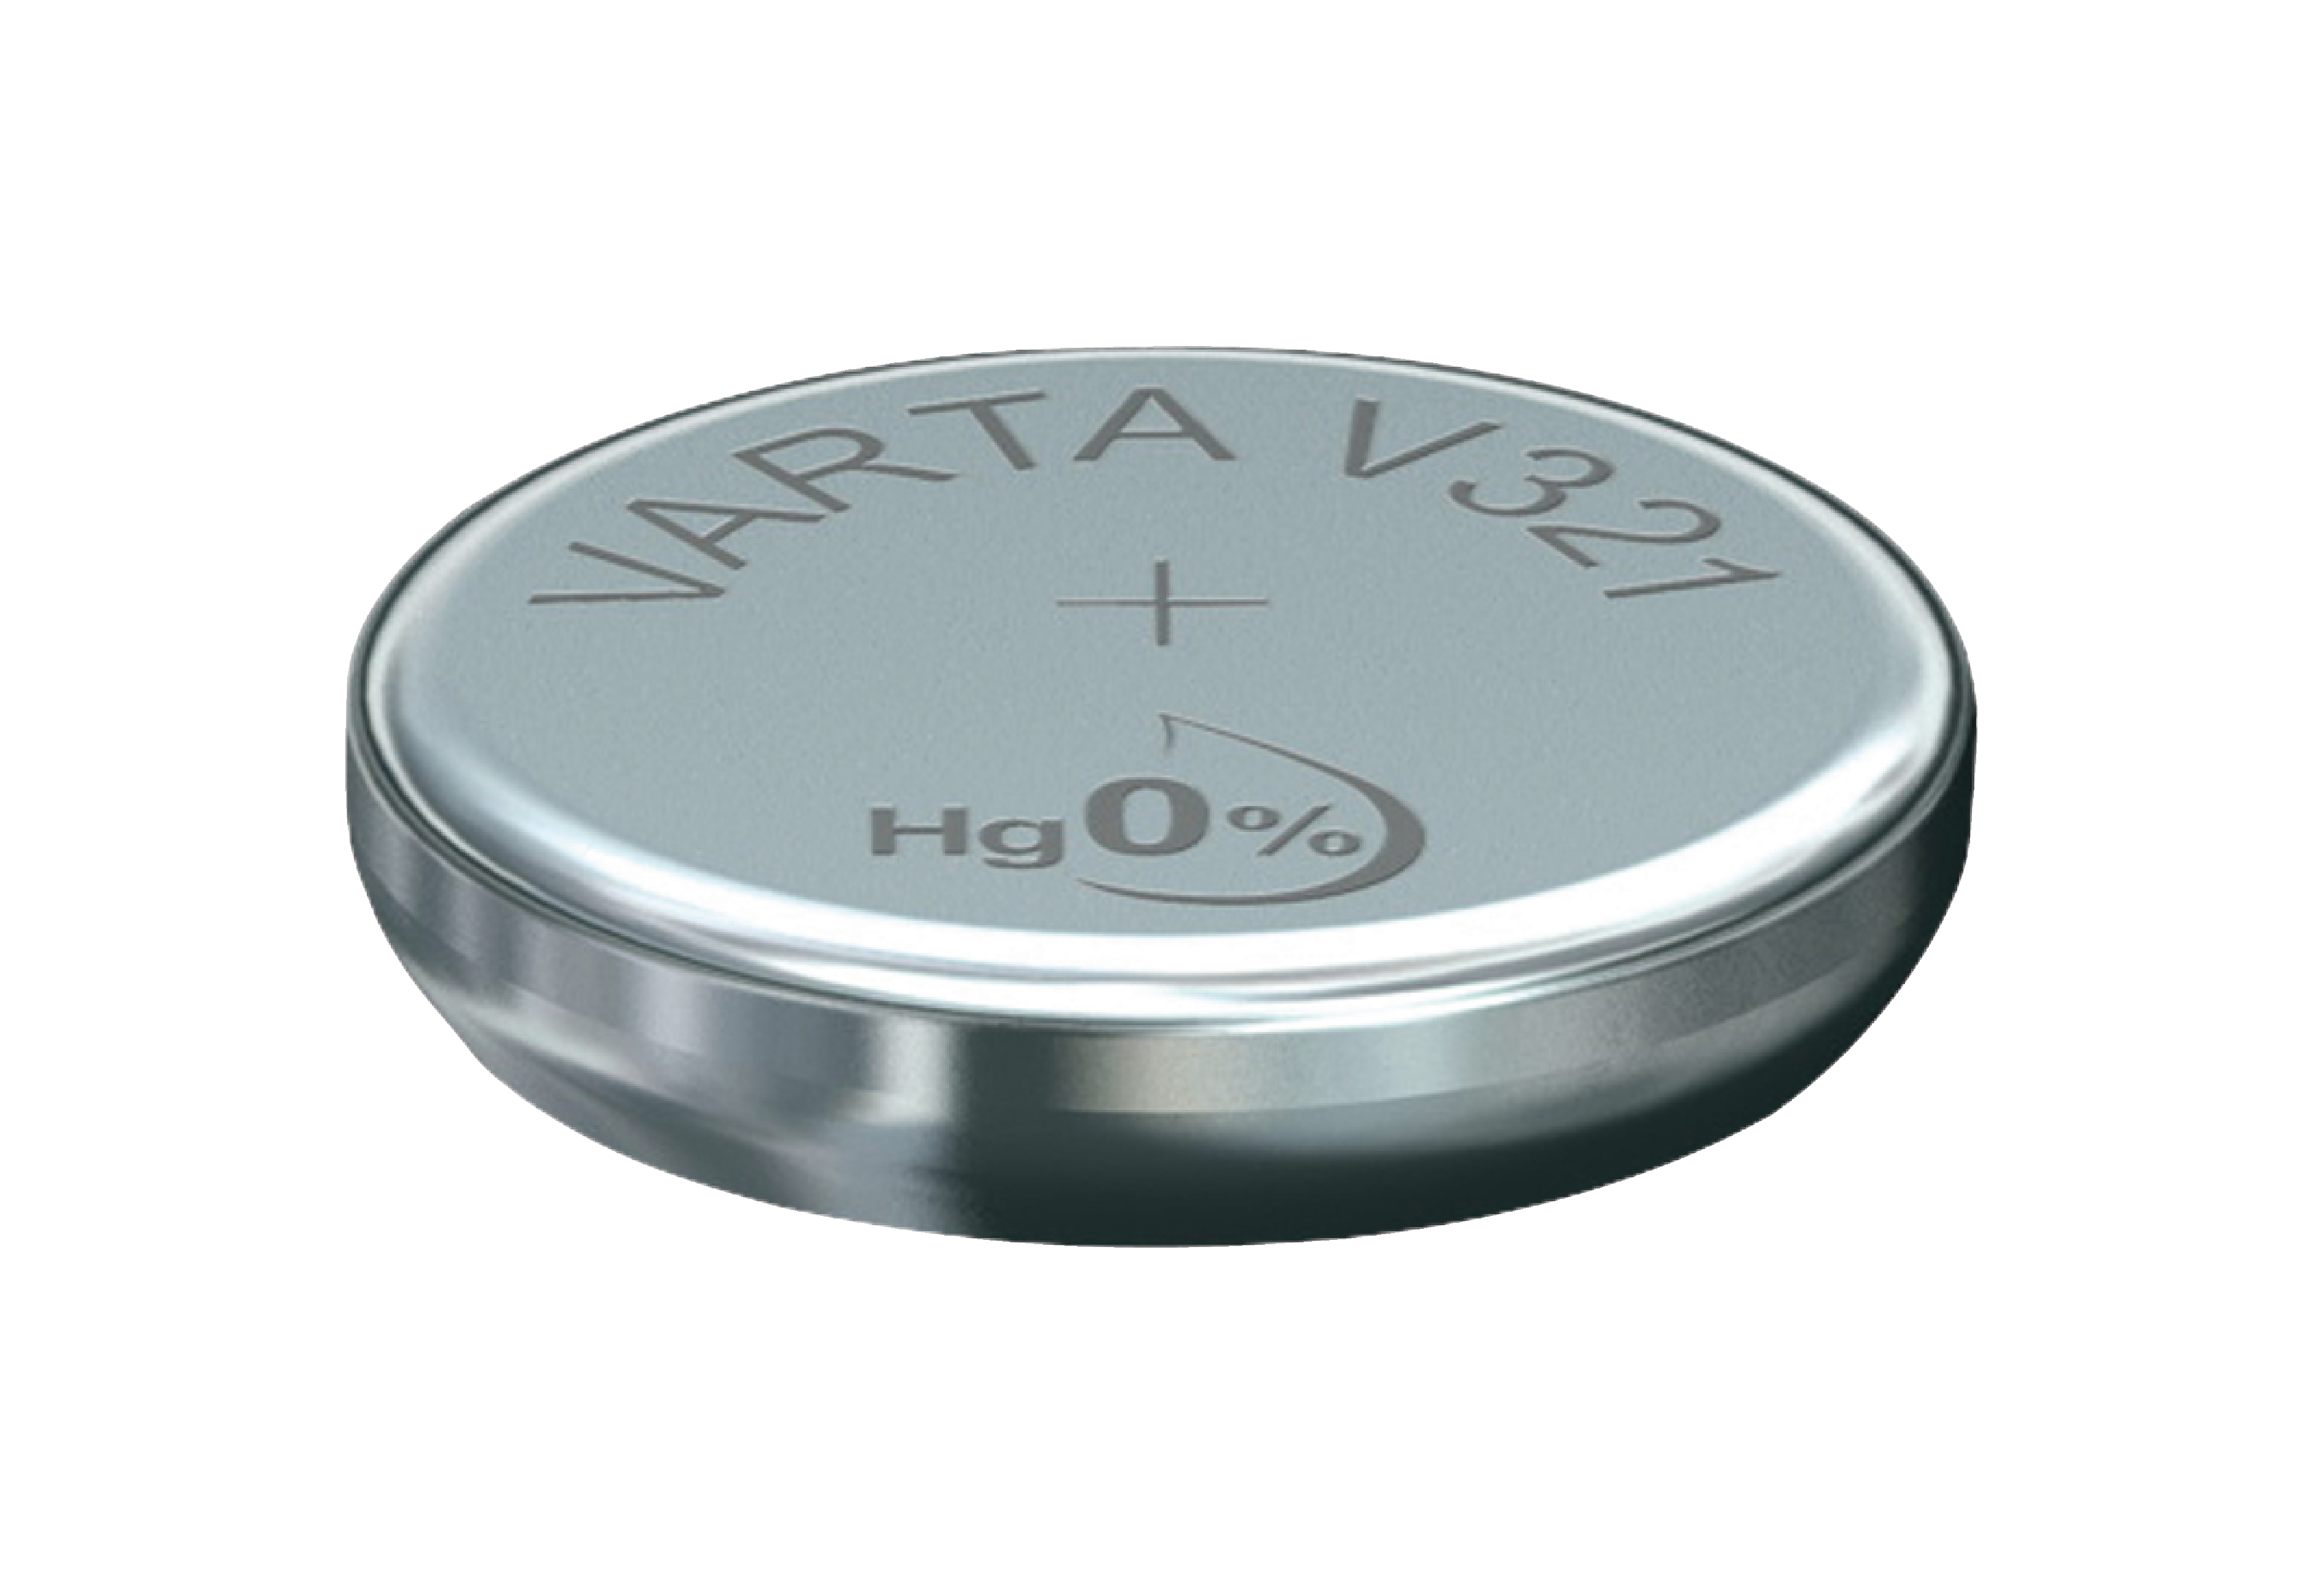 Stříbro-oxidová hodinková baterie SR65/V321 1.55 V 13 mAh, VARTA-V3521